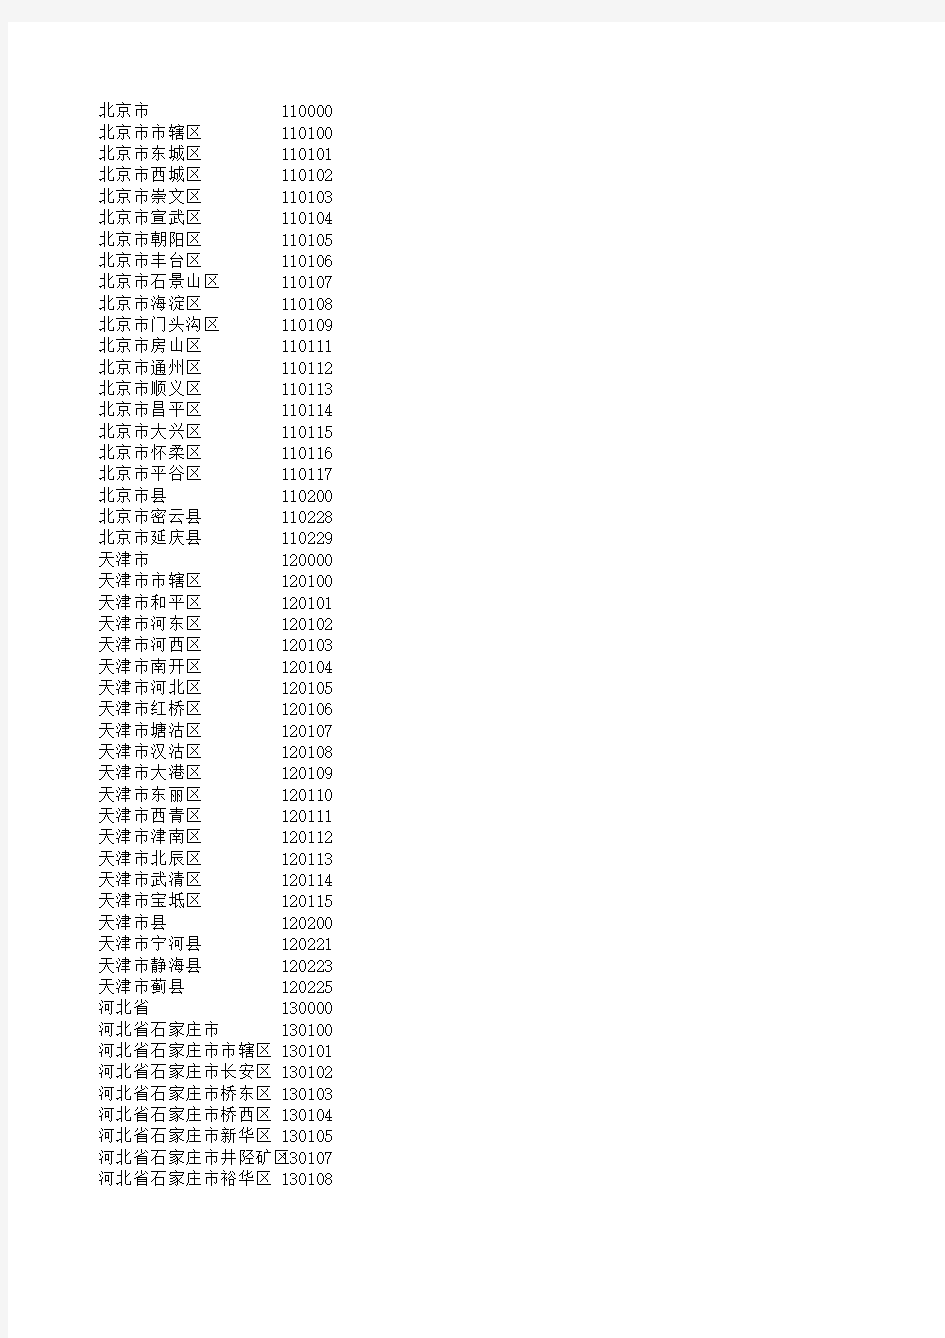 2014生源地代码对照表